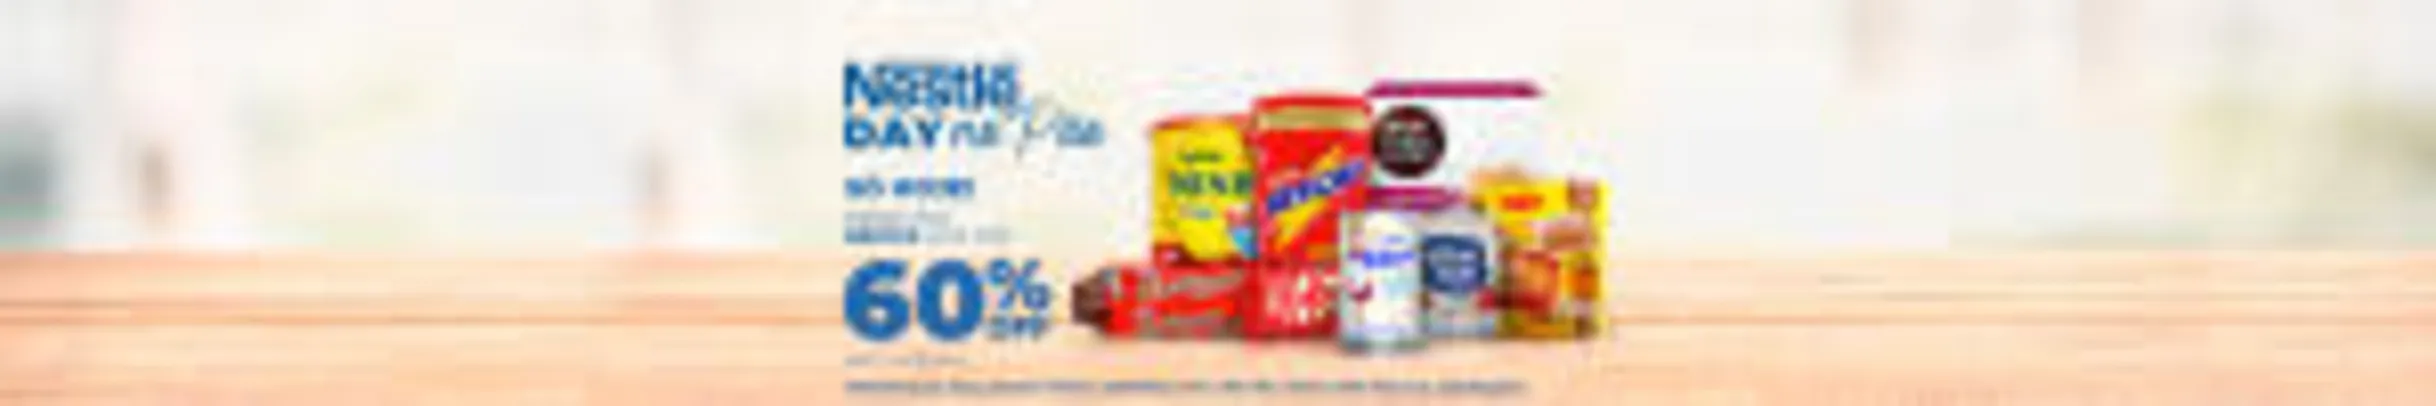 [CC Mastercard] Nestlé Day: Até 60% OFF na 2º unidade + frete grátis